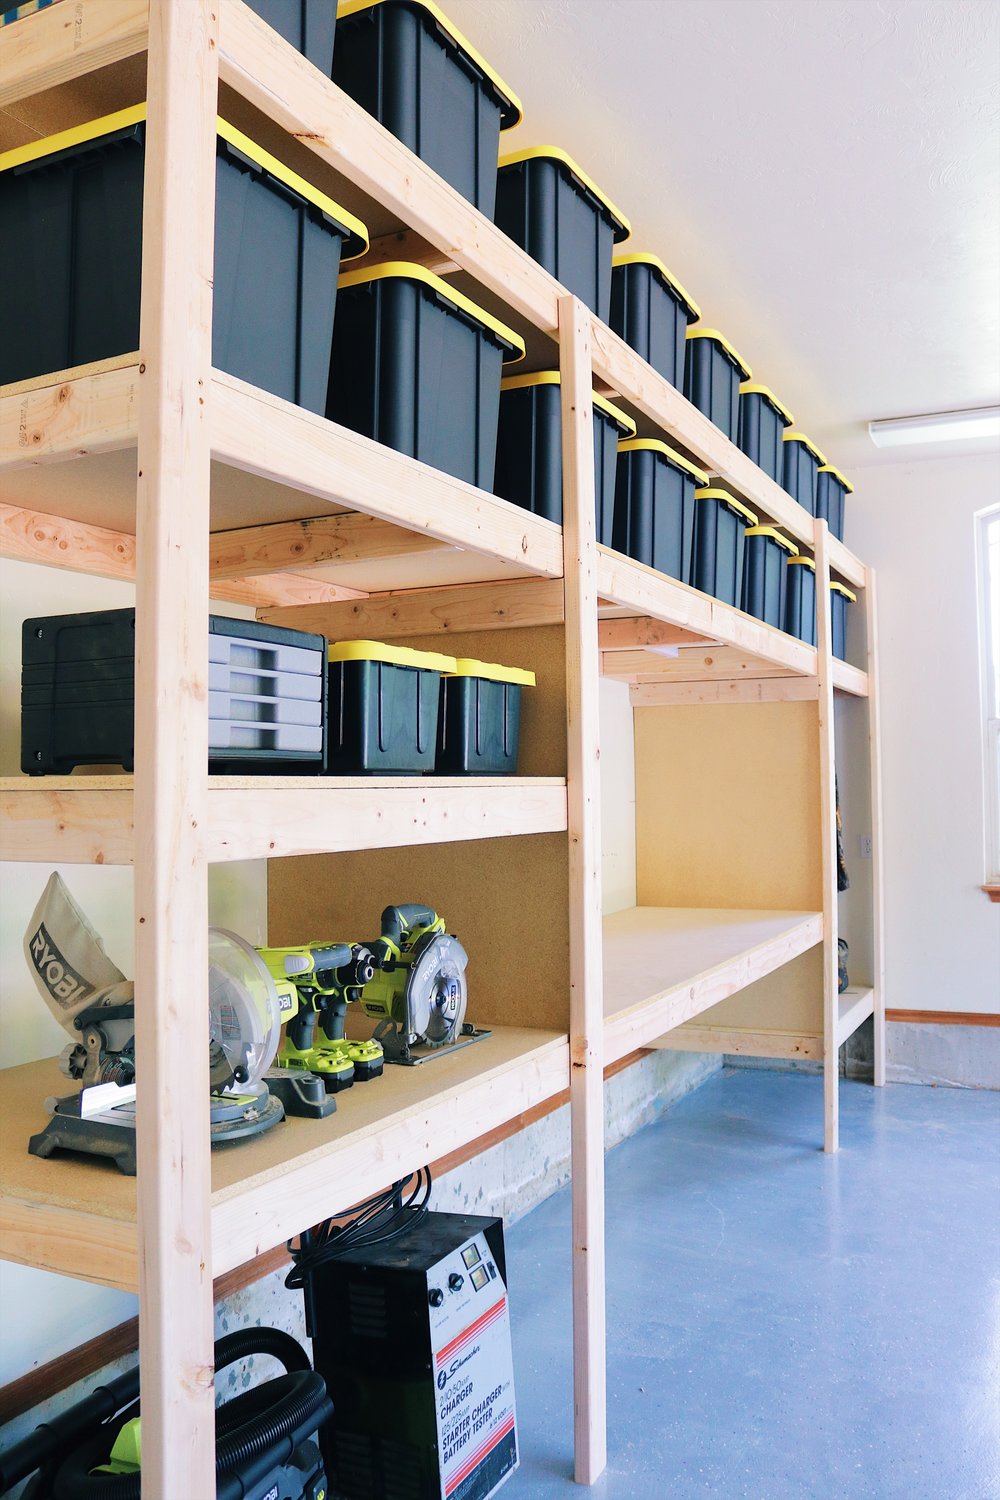 Diy Garage Shelves Modern Builds, Garage Shelving And Storage